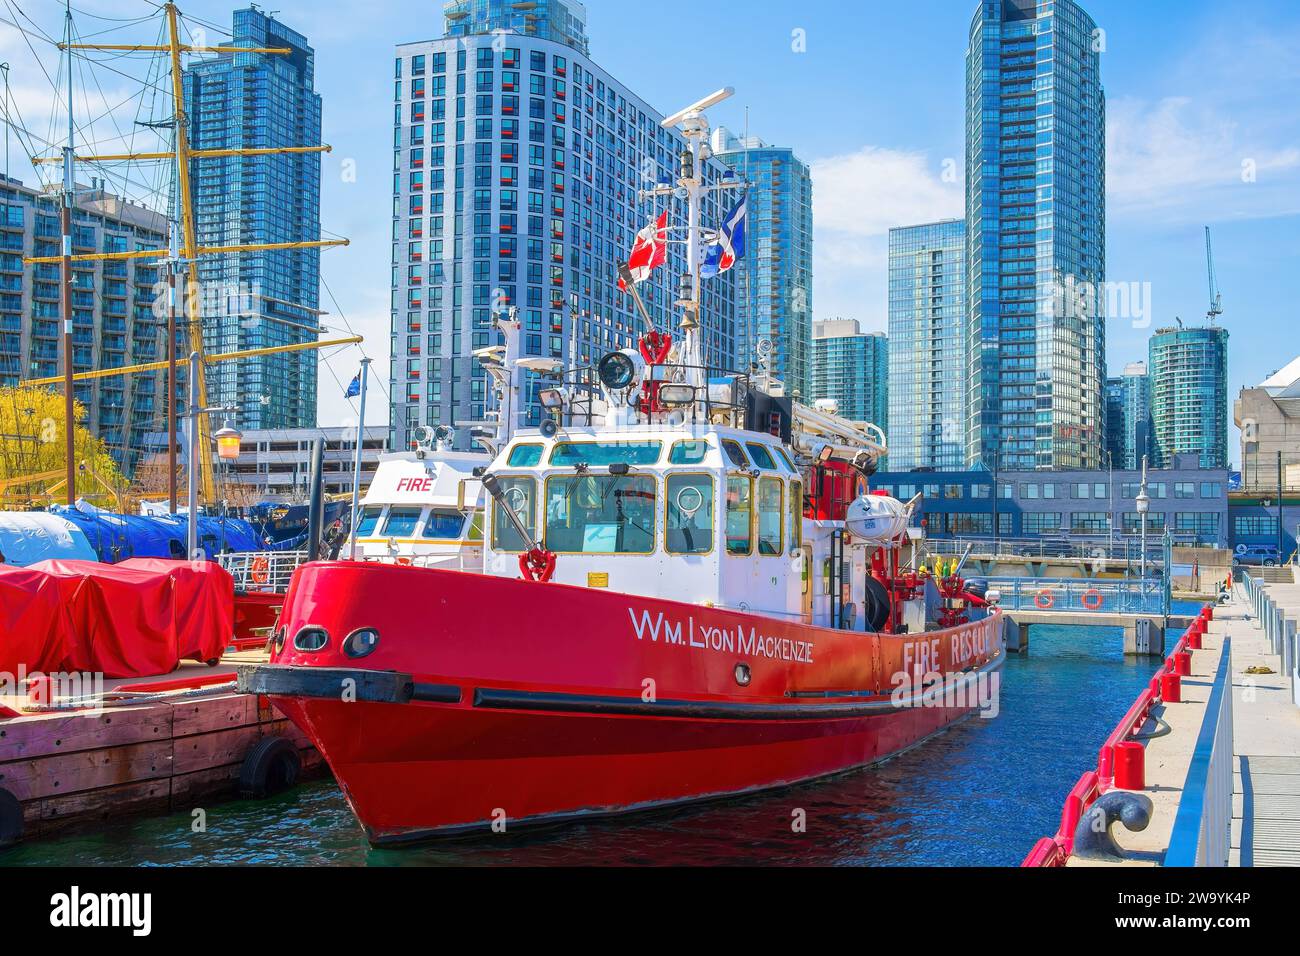 Toronto, Ontario, Kanada, 22. Juni 2016: William Lyon Mackenzie # 334 ist ein Feuerwehrboot der Toronto Fire Services, das im Lake Ontario dient Stockfoto